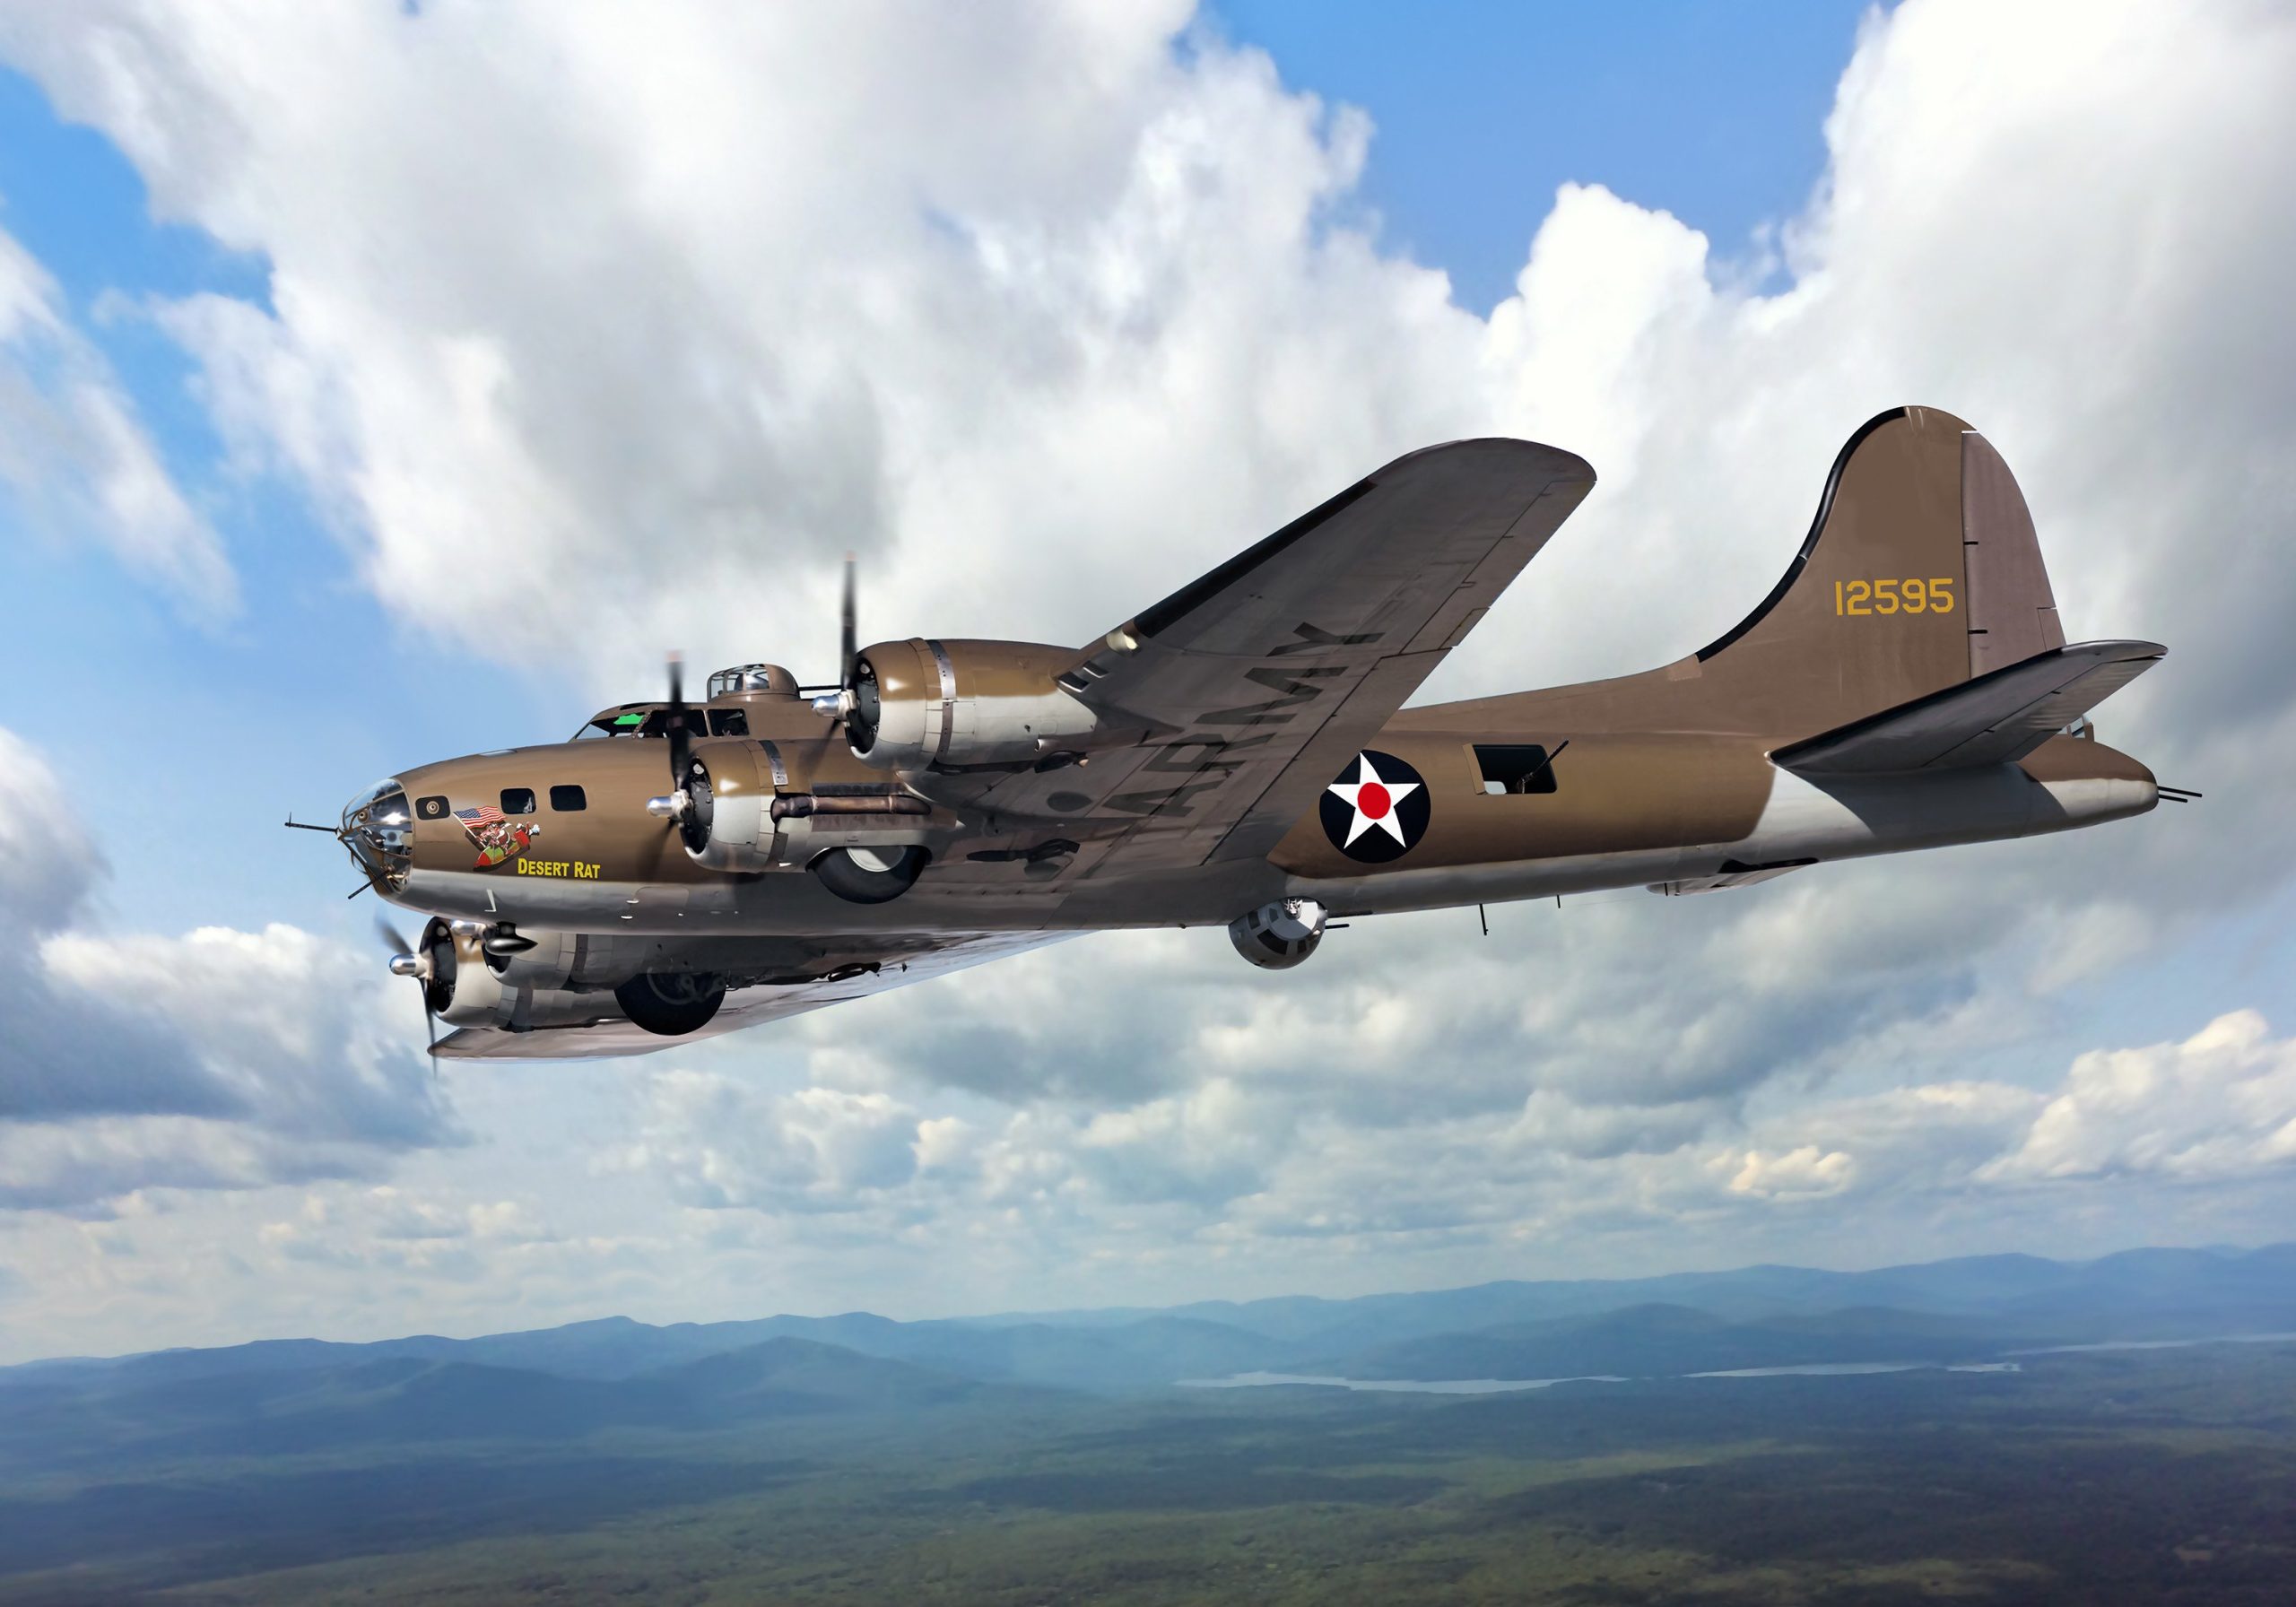 ΗΠΑ: Έπεσε βομβαρδιστικό αεροσκάφος B-17 του Β’ Παγκοσμίου Πολέμου (βίντεο)